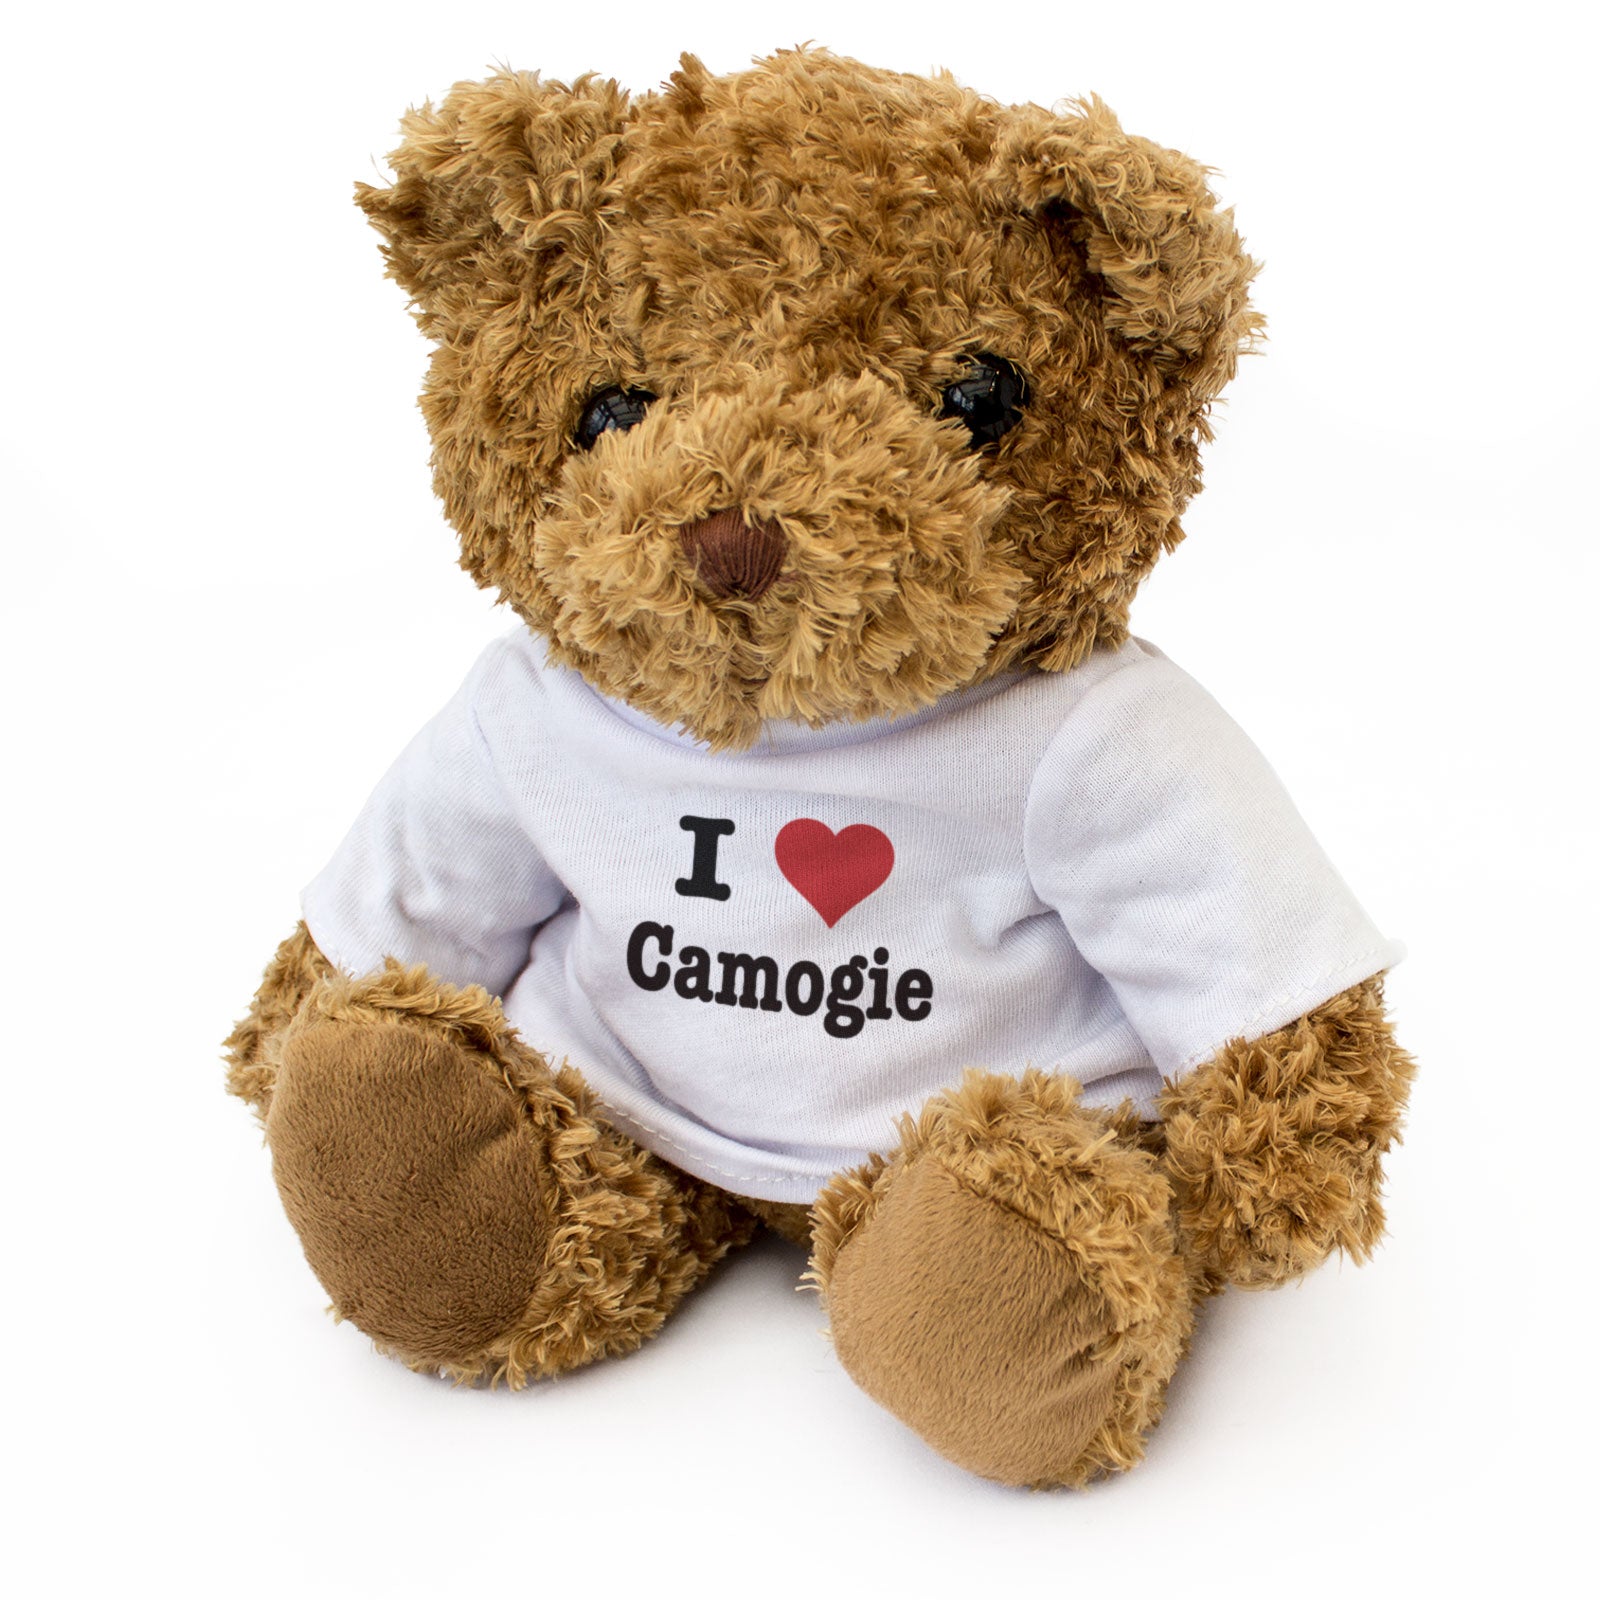 I Love Camogie - Teddy Bear